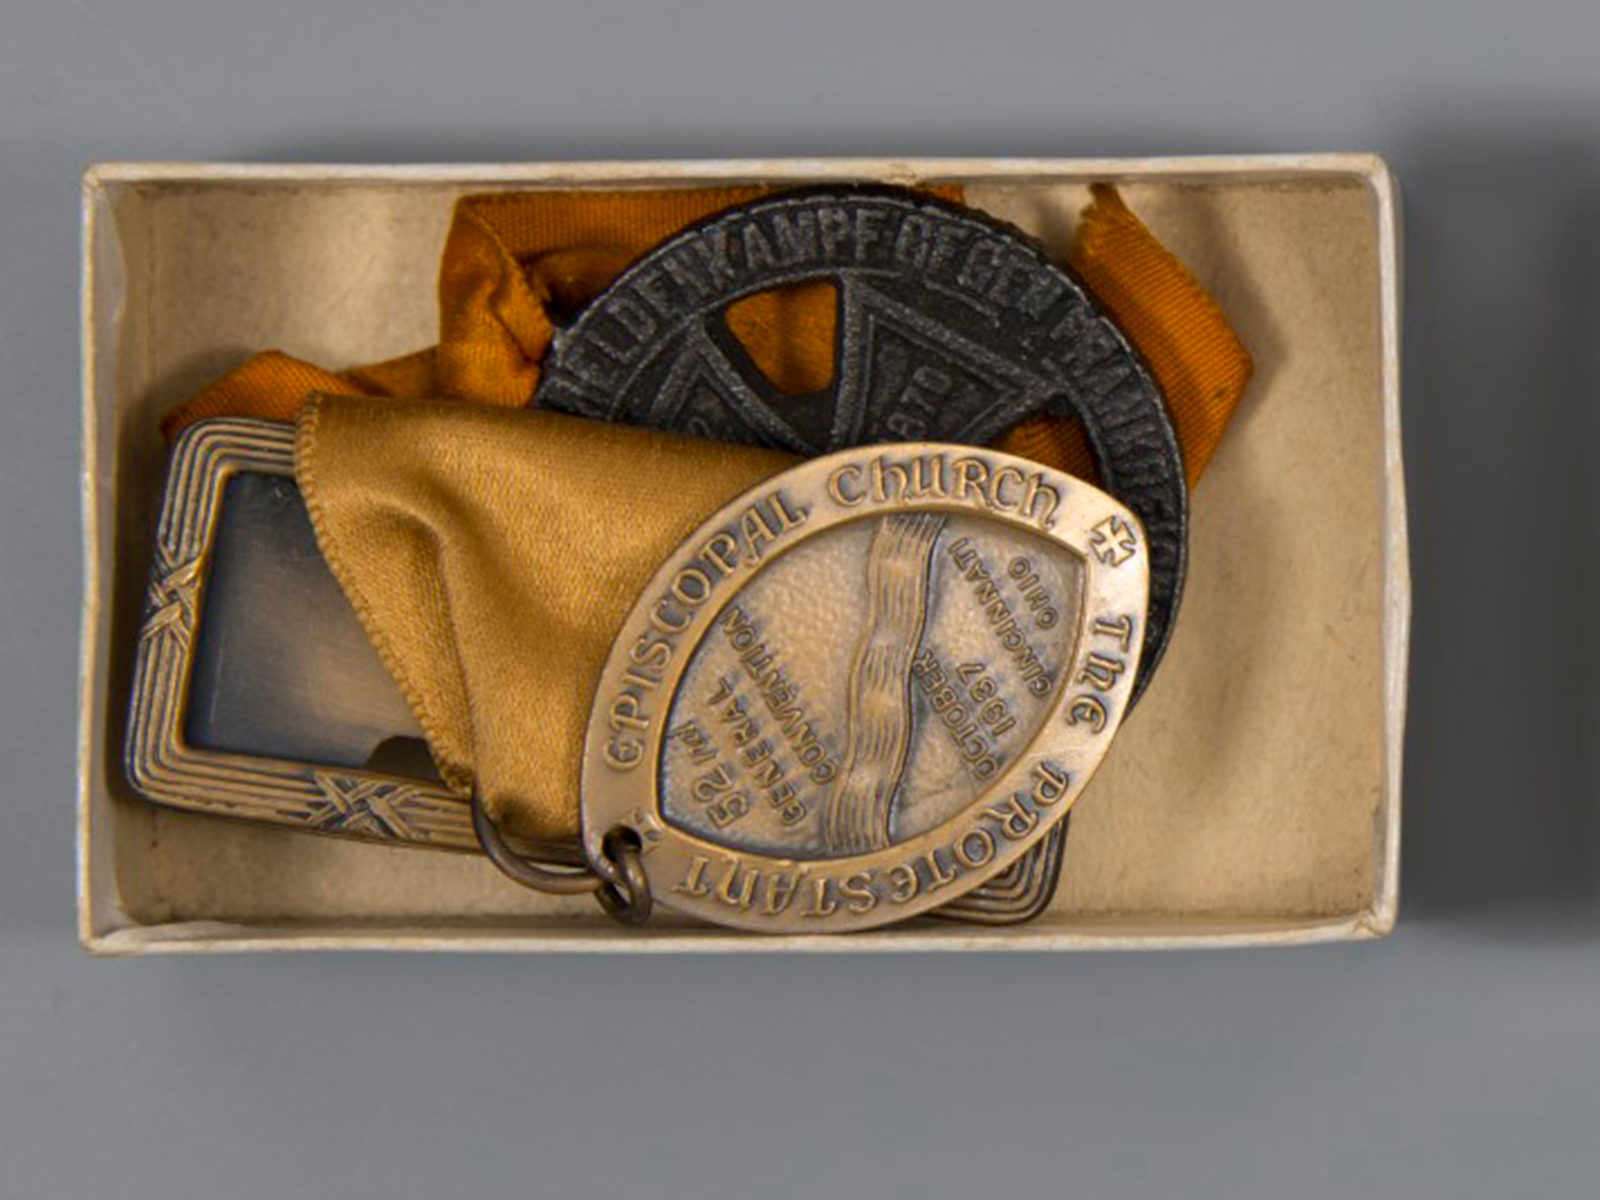 medals in original non-archival box